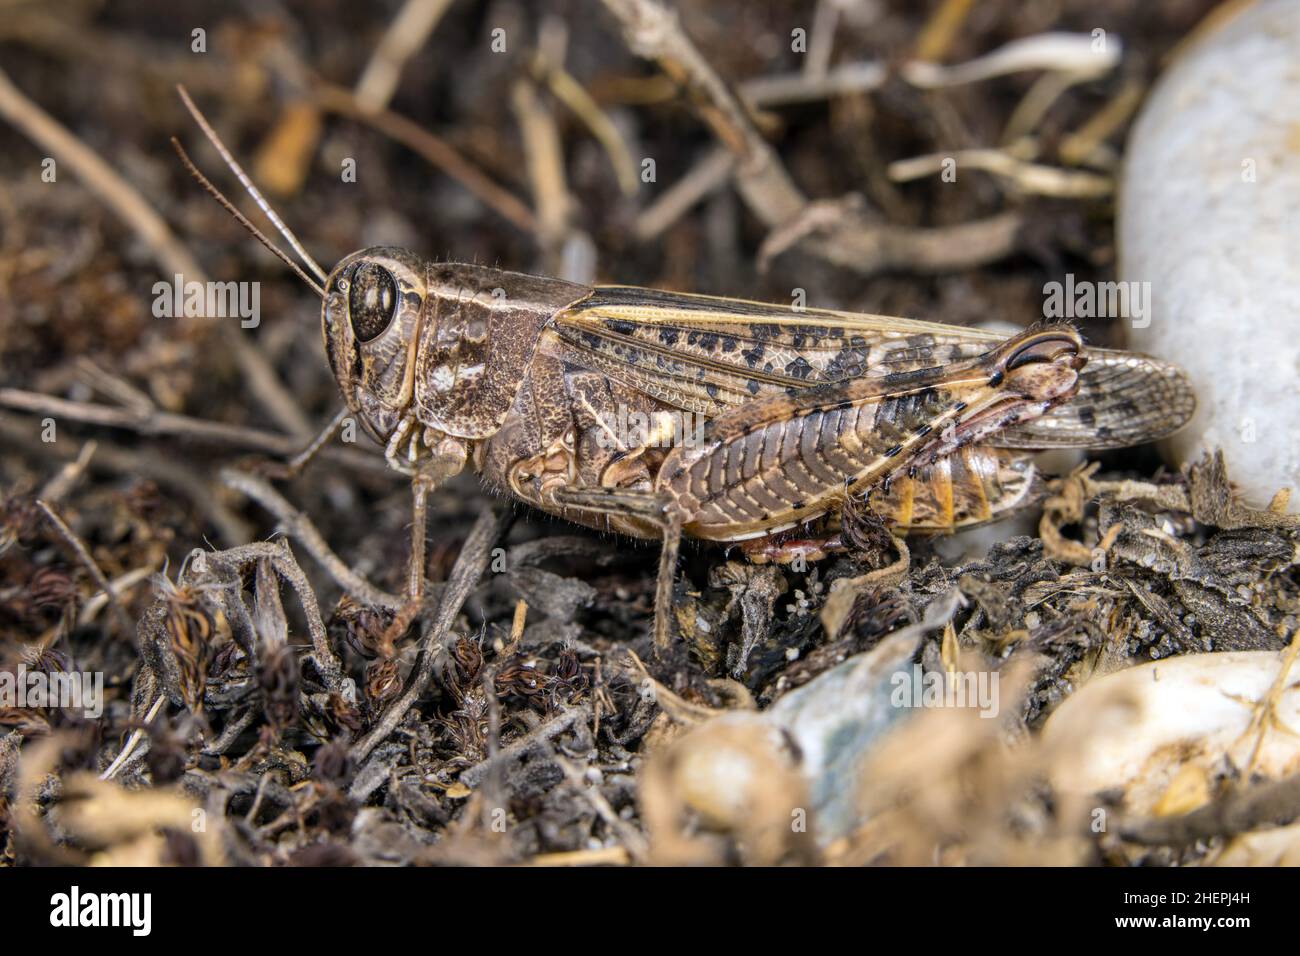 Italian locust (Calliptamus italicus, Calliptenus cerisanus), sits on the ground, Germany Stock Photo